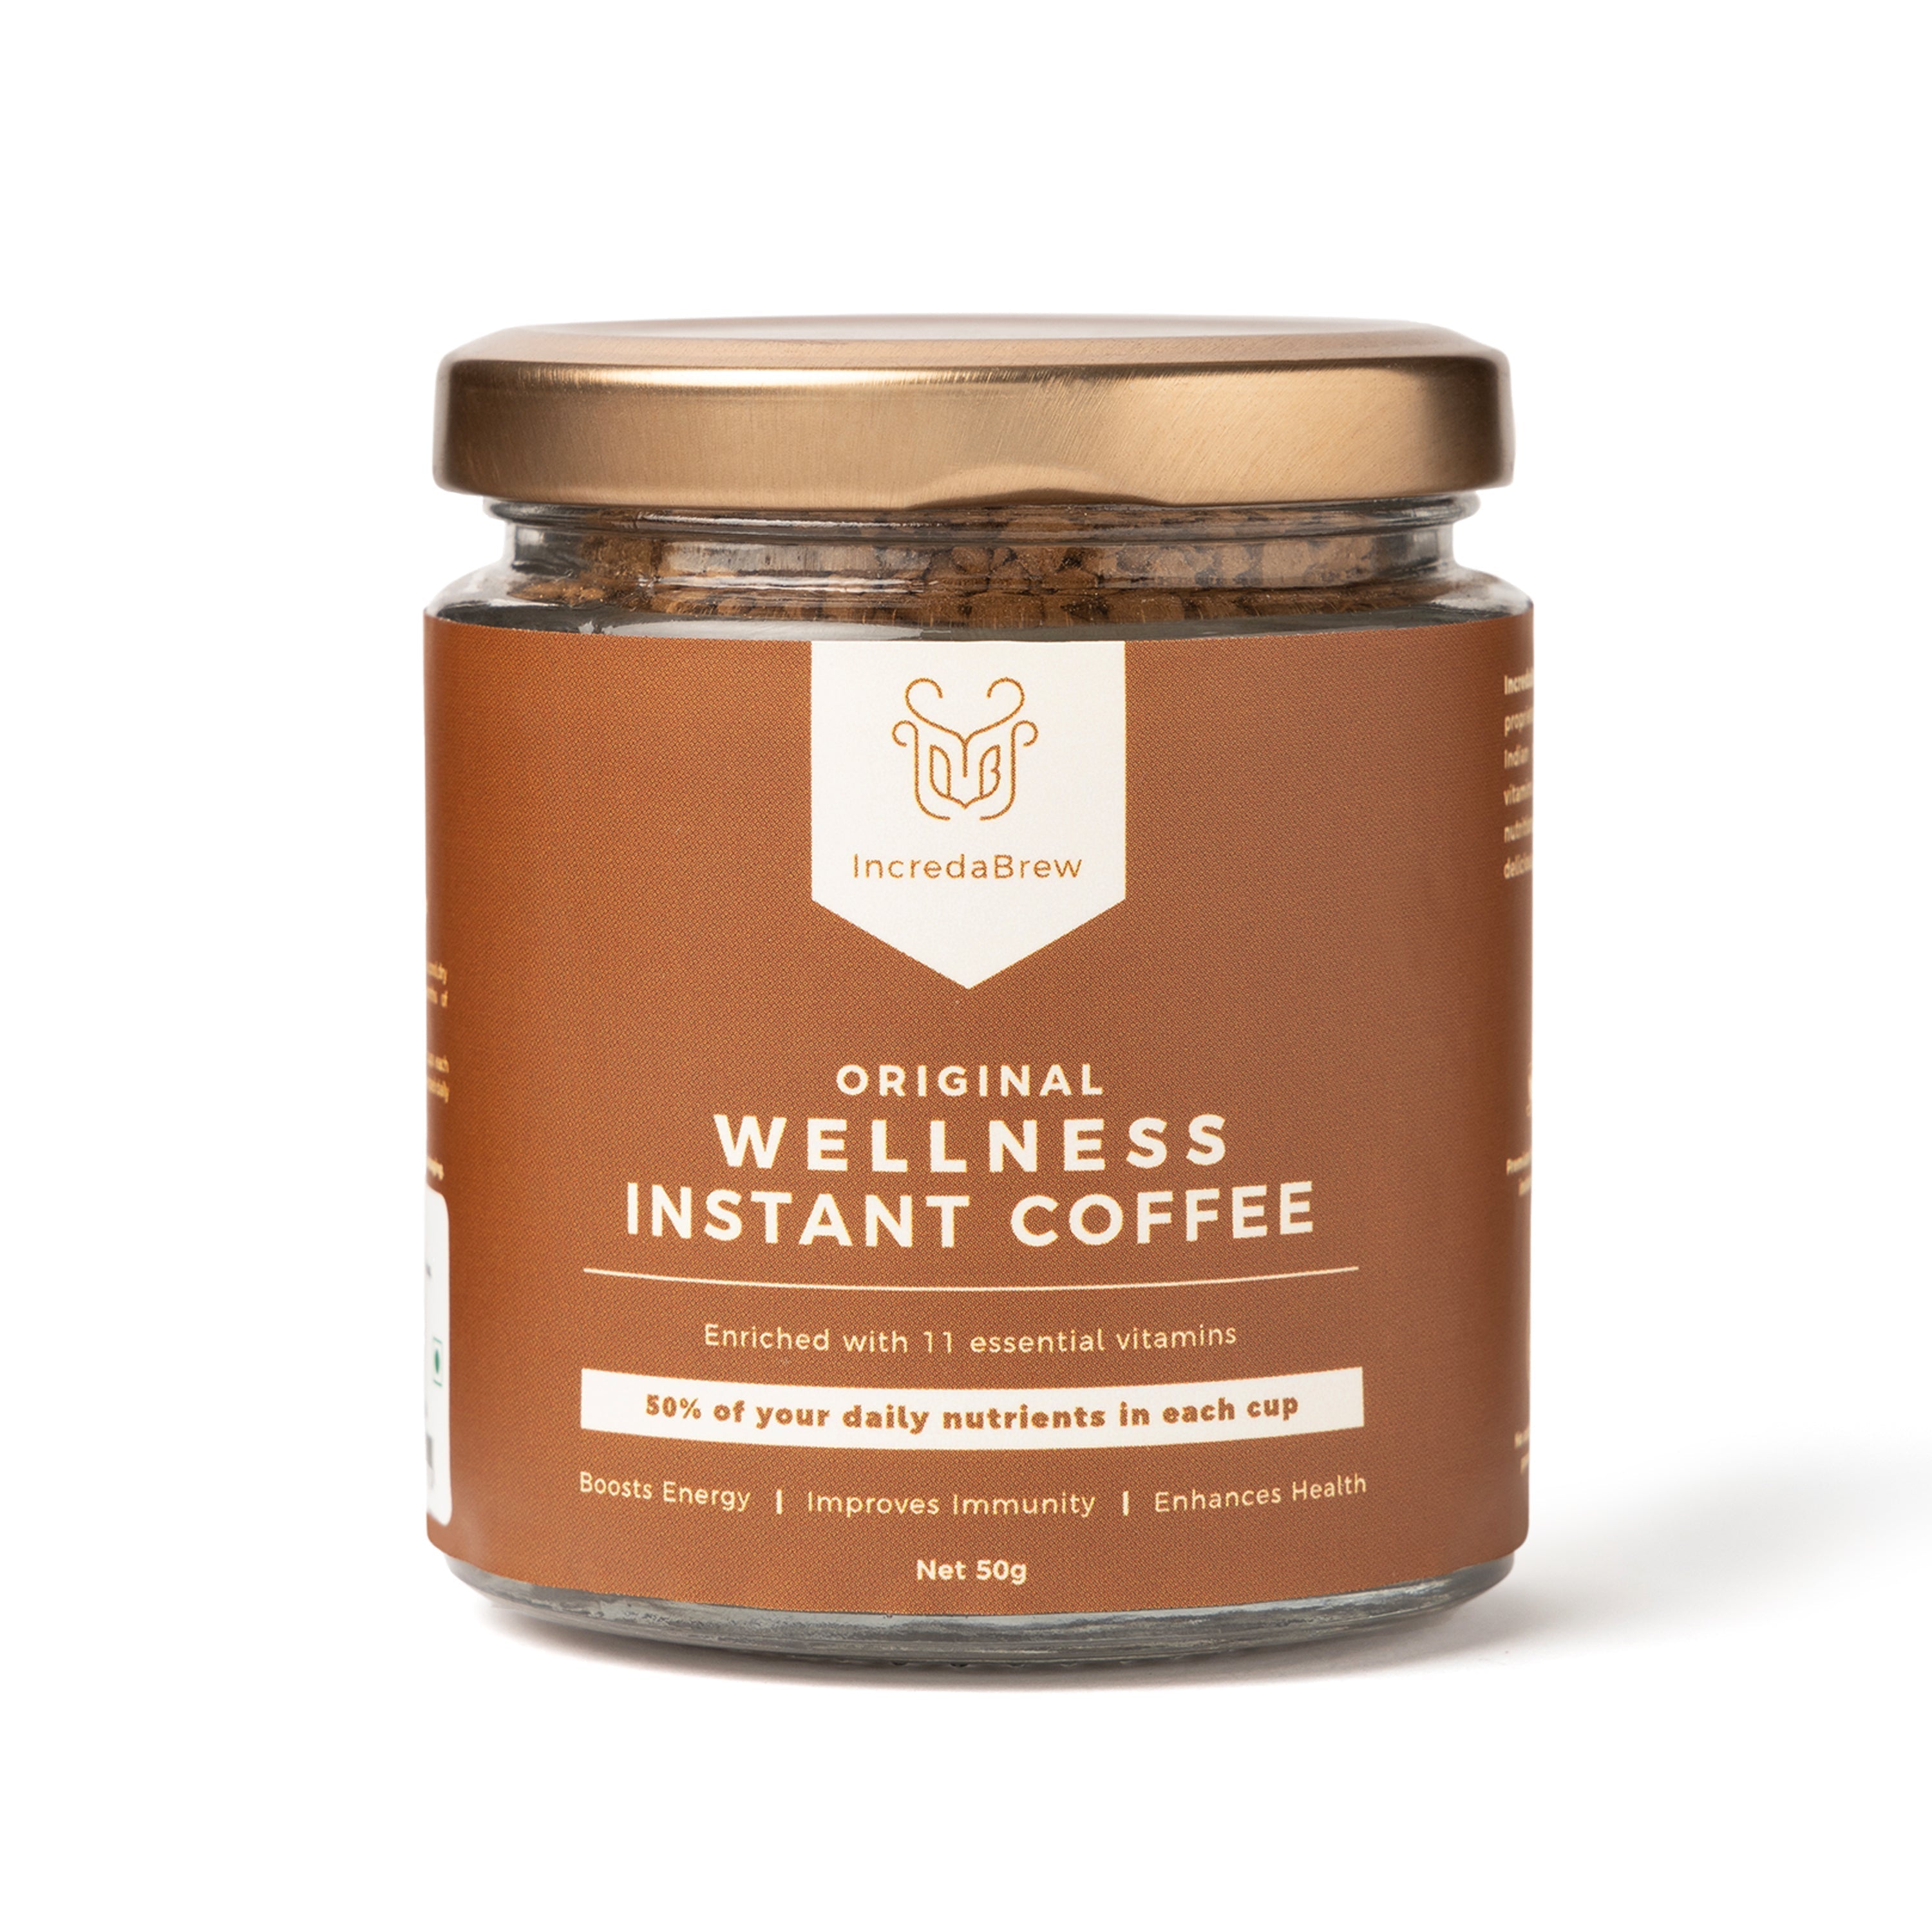 Original Wellness Instant Coffee - 50 gm Jar + Free Mug